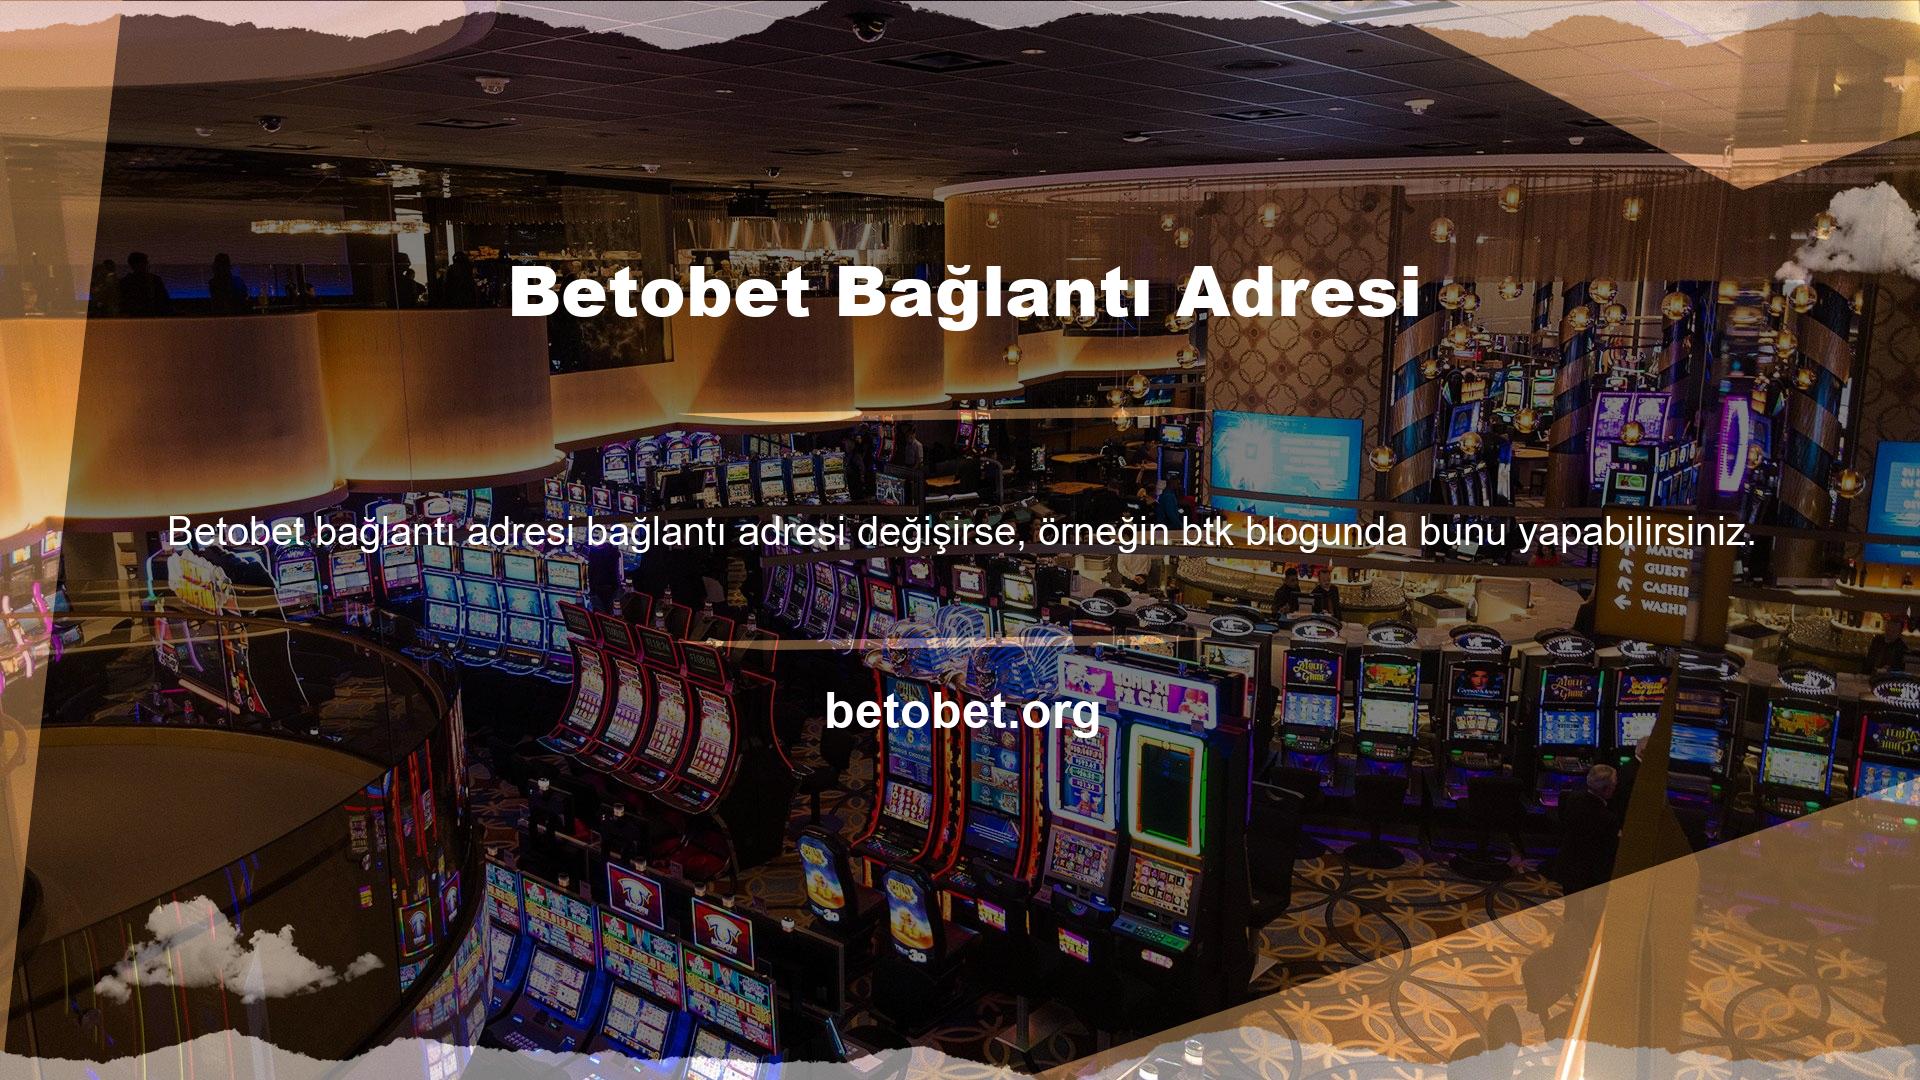 Çok sayıda casino sever, sanal sporlar da dahil olmak üzere çeşitli içerikler sunan çevrimiçi casino platformlarını arıyor